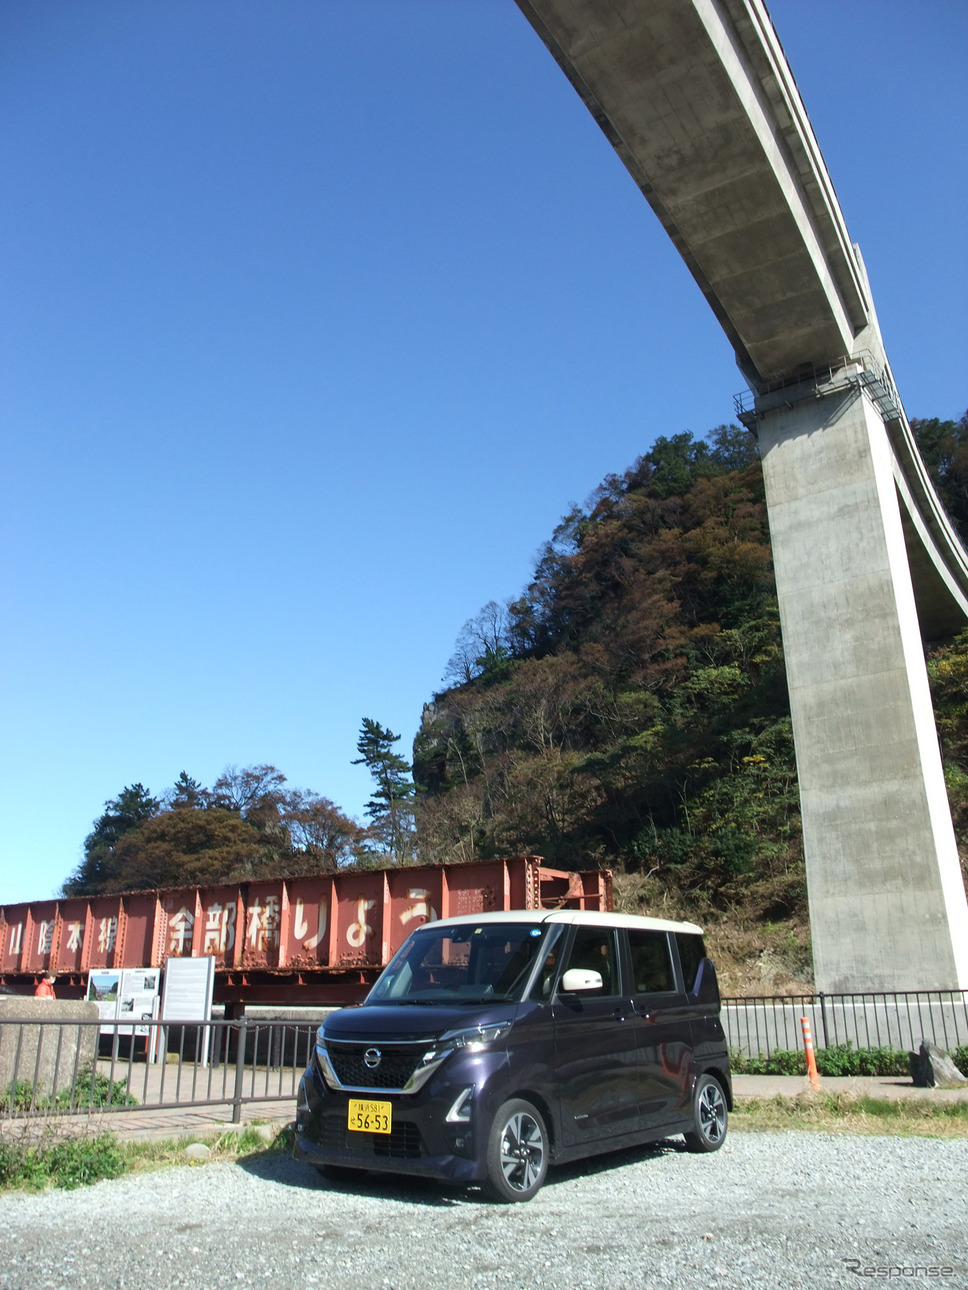 兵庫県北部、山陰本線余部駅にて。かつては鉄橋で有名だったが現在はコンクリート橋に。ルークスの左に見えているのは野外展示されている旧鉄橋の一部。《写真撮影 井元康一郎》